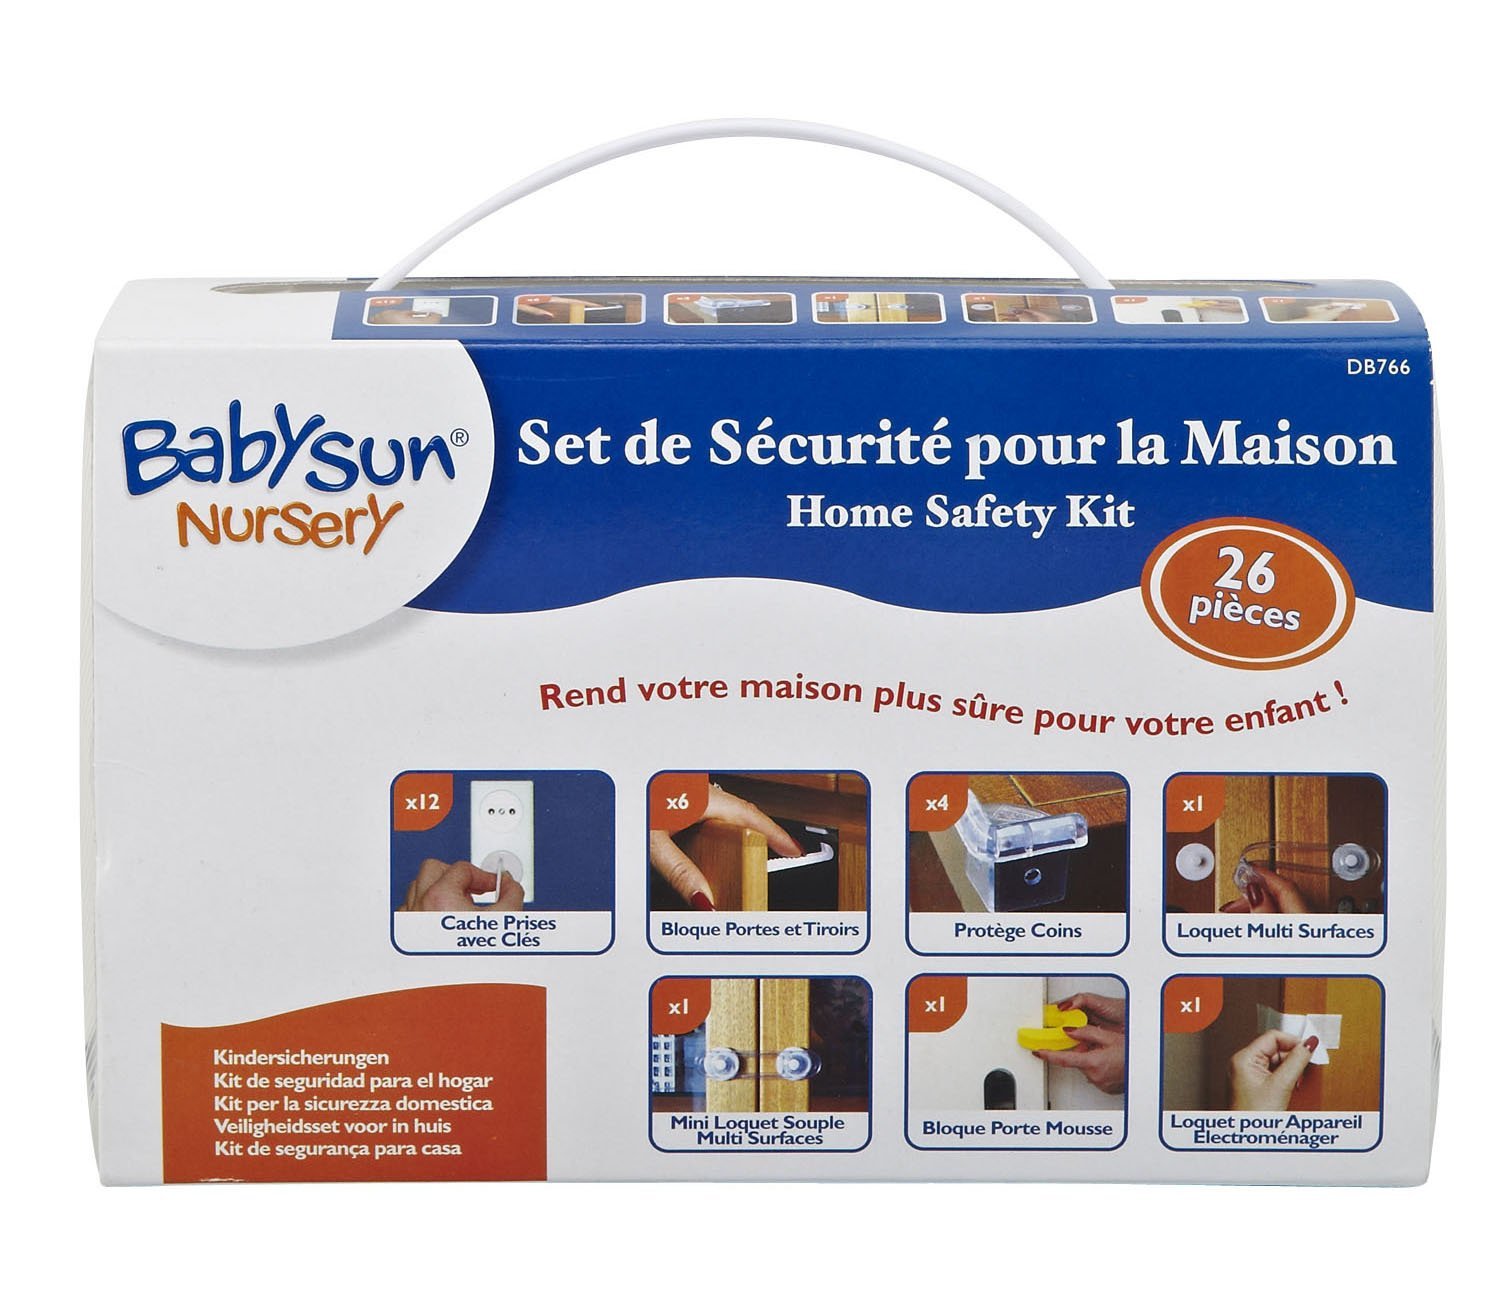 Set de Sécurité 26 pièces pour la maison - Definitive Babysun Nursery DB766  - Bébéluga